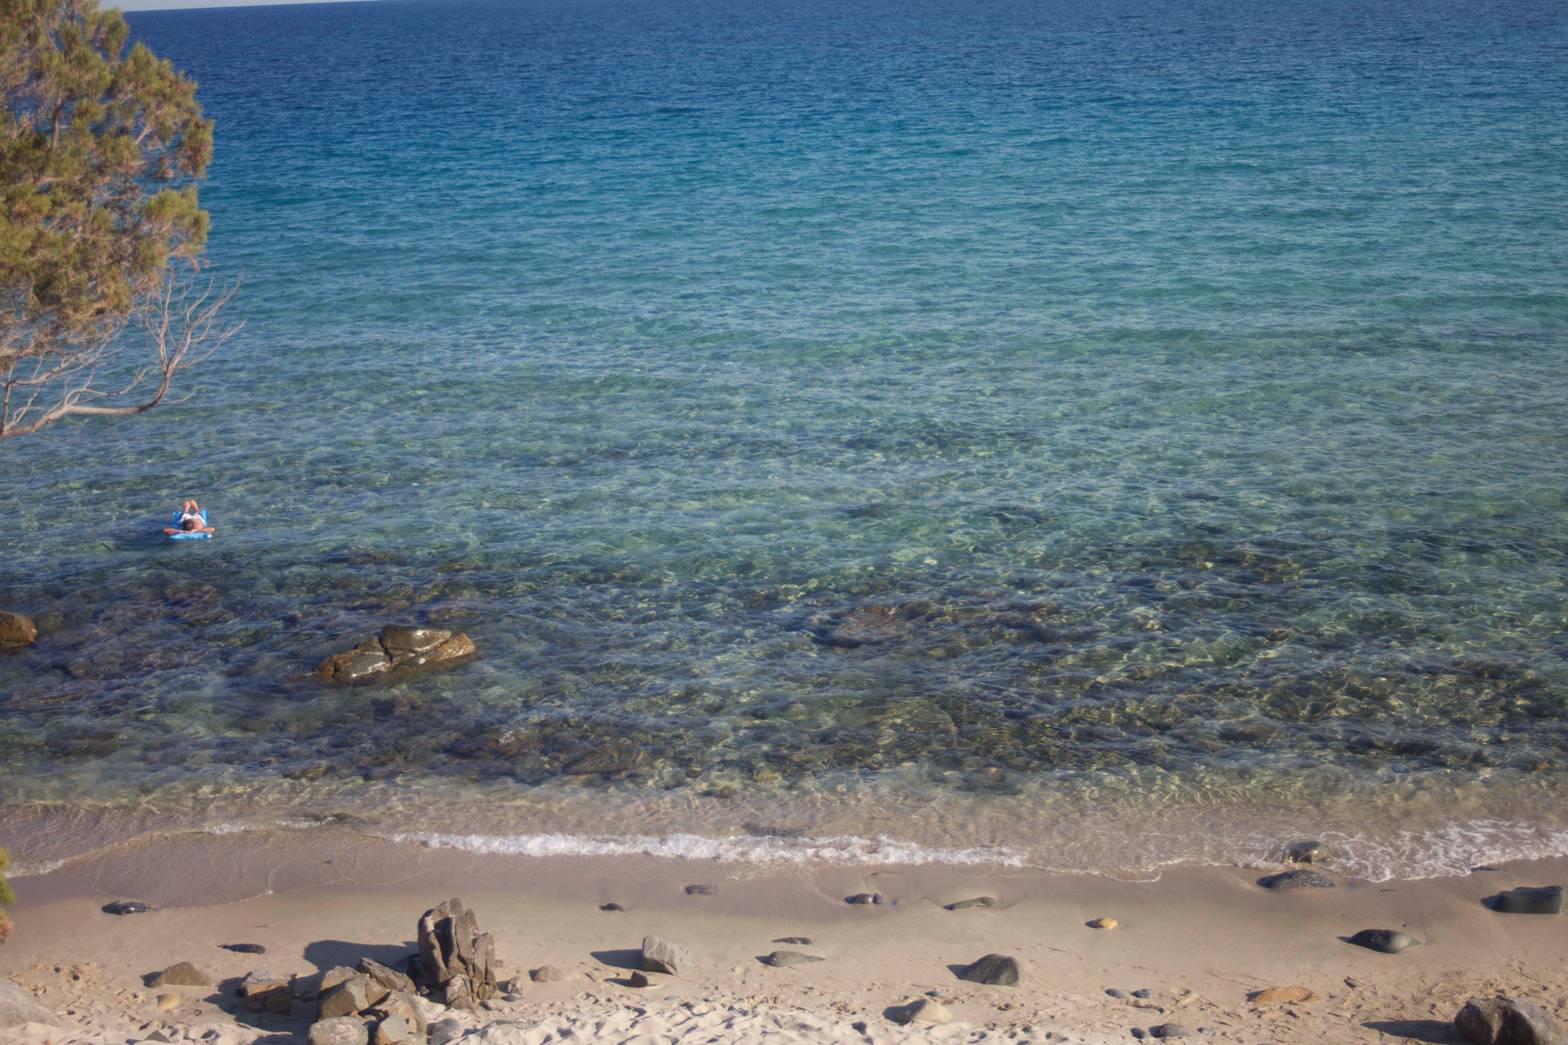 A beach in Calgari Sardinia where much of Katia Lief's novel Dead Rich was set